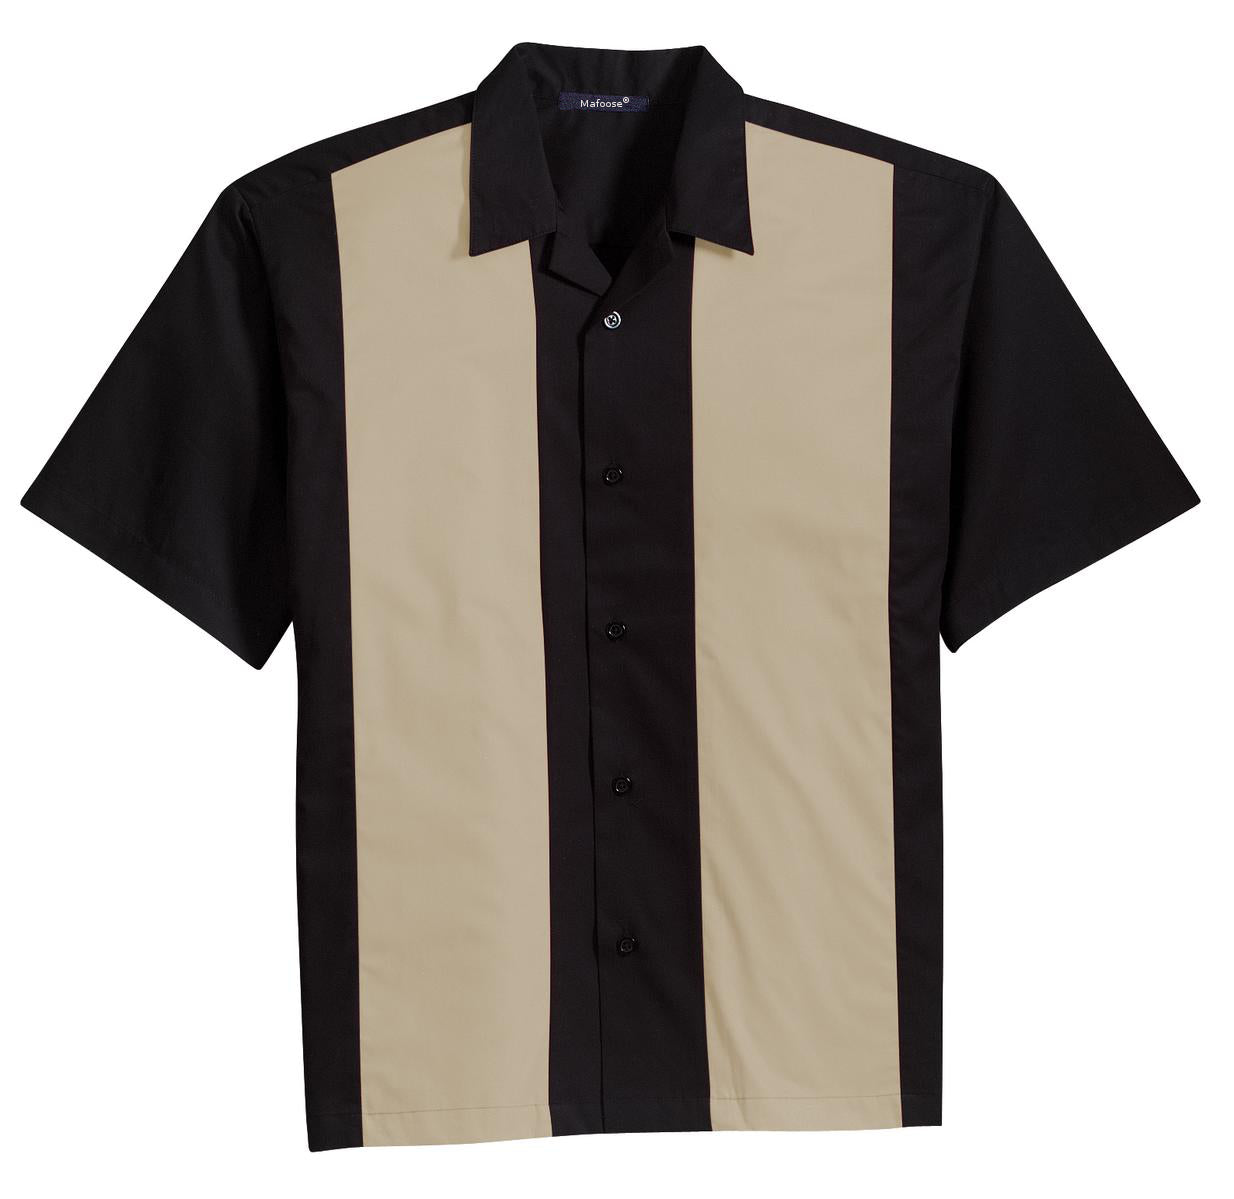 Retro Camp Shirt | Mafoose Men's Retro Camp Shirt – Mafoose.com